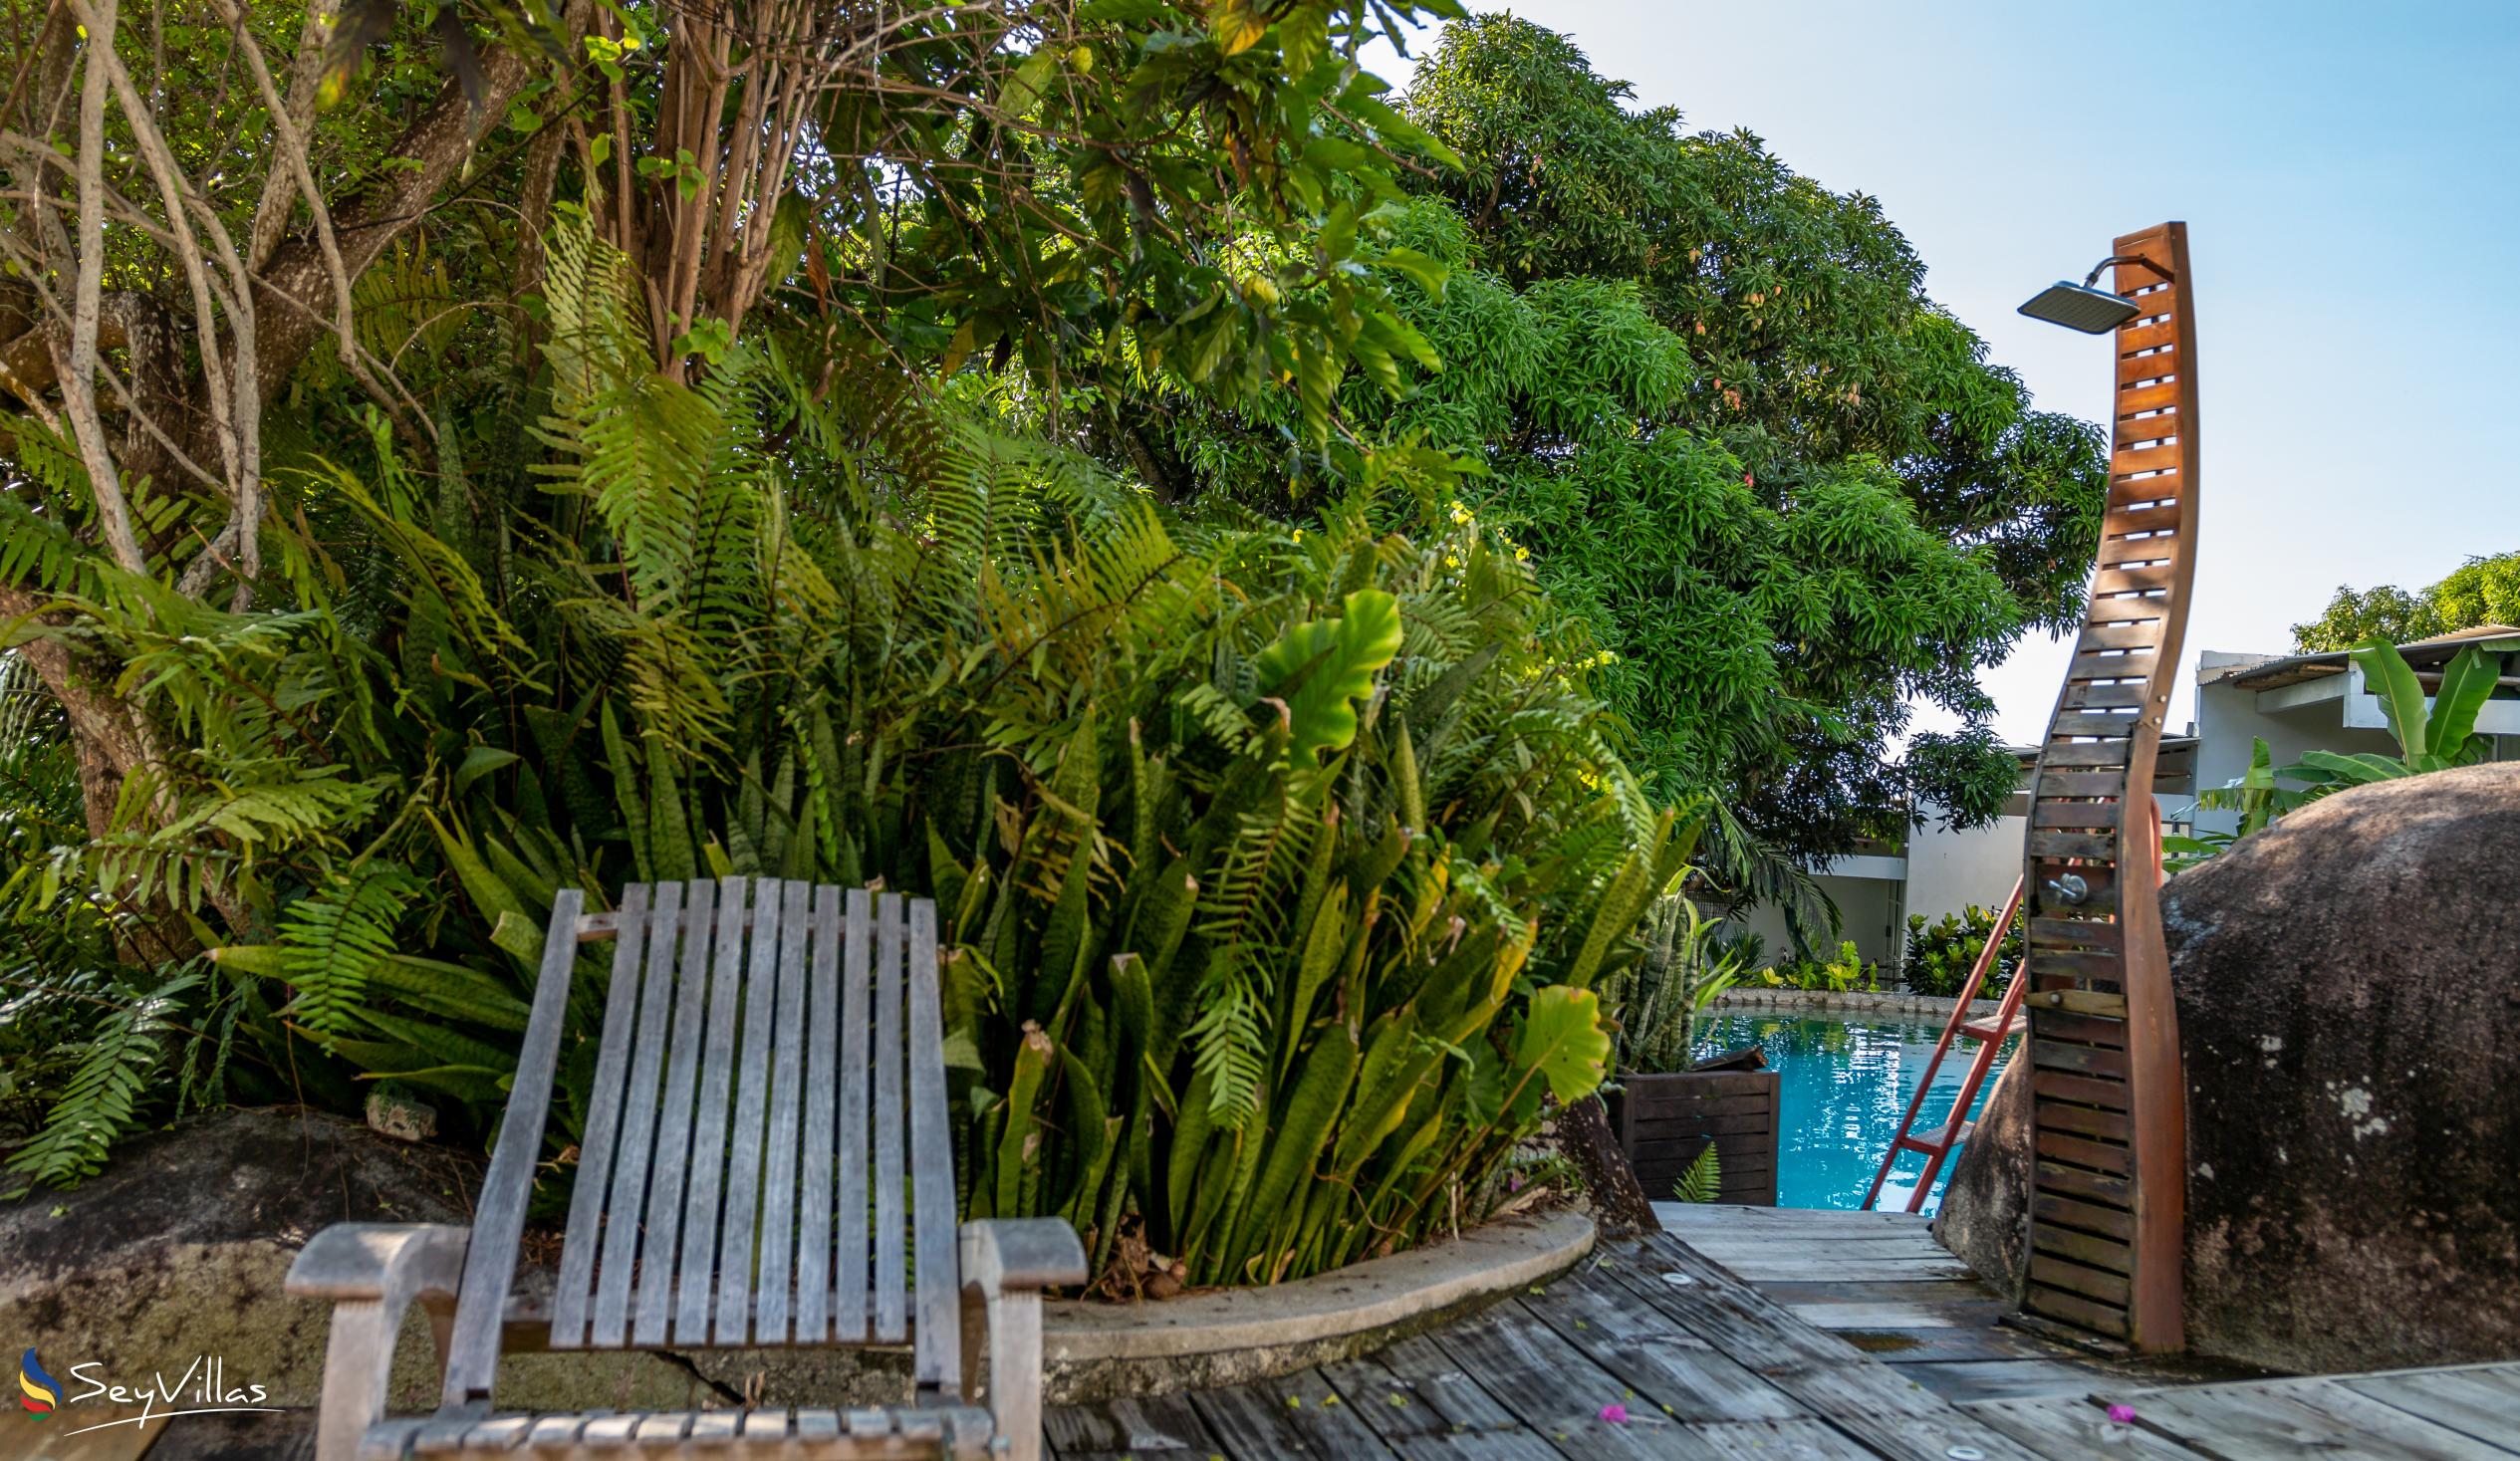 Foto 15: Bliss Hotel - Aussenbereich - Mahé (Seychellen)